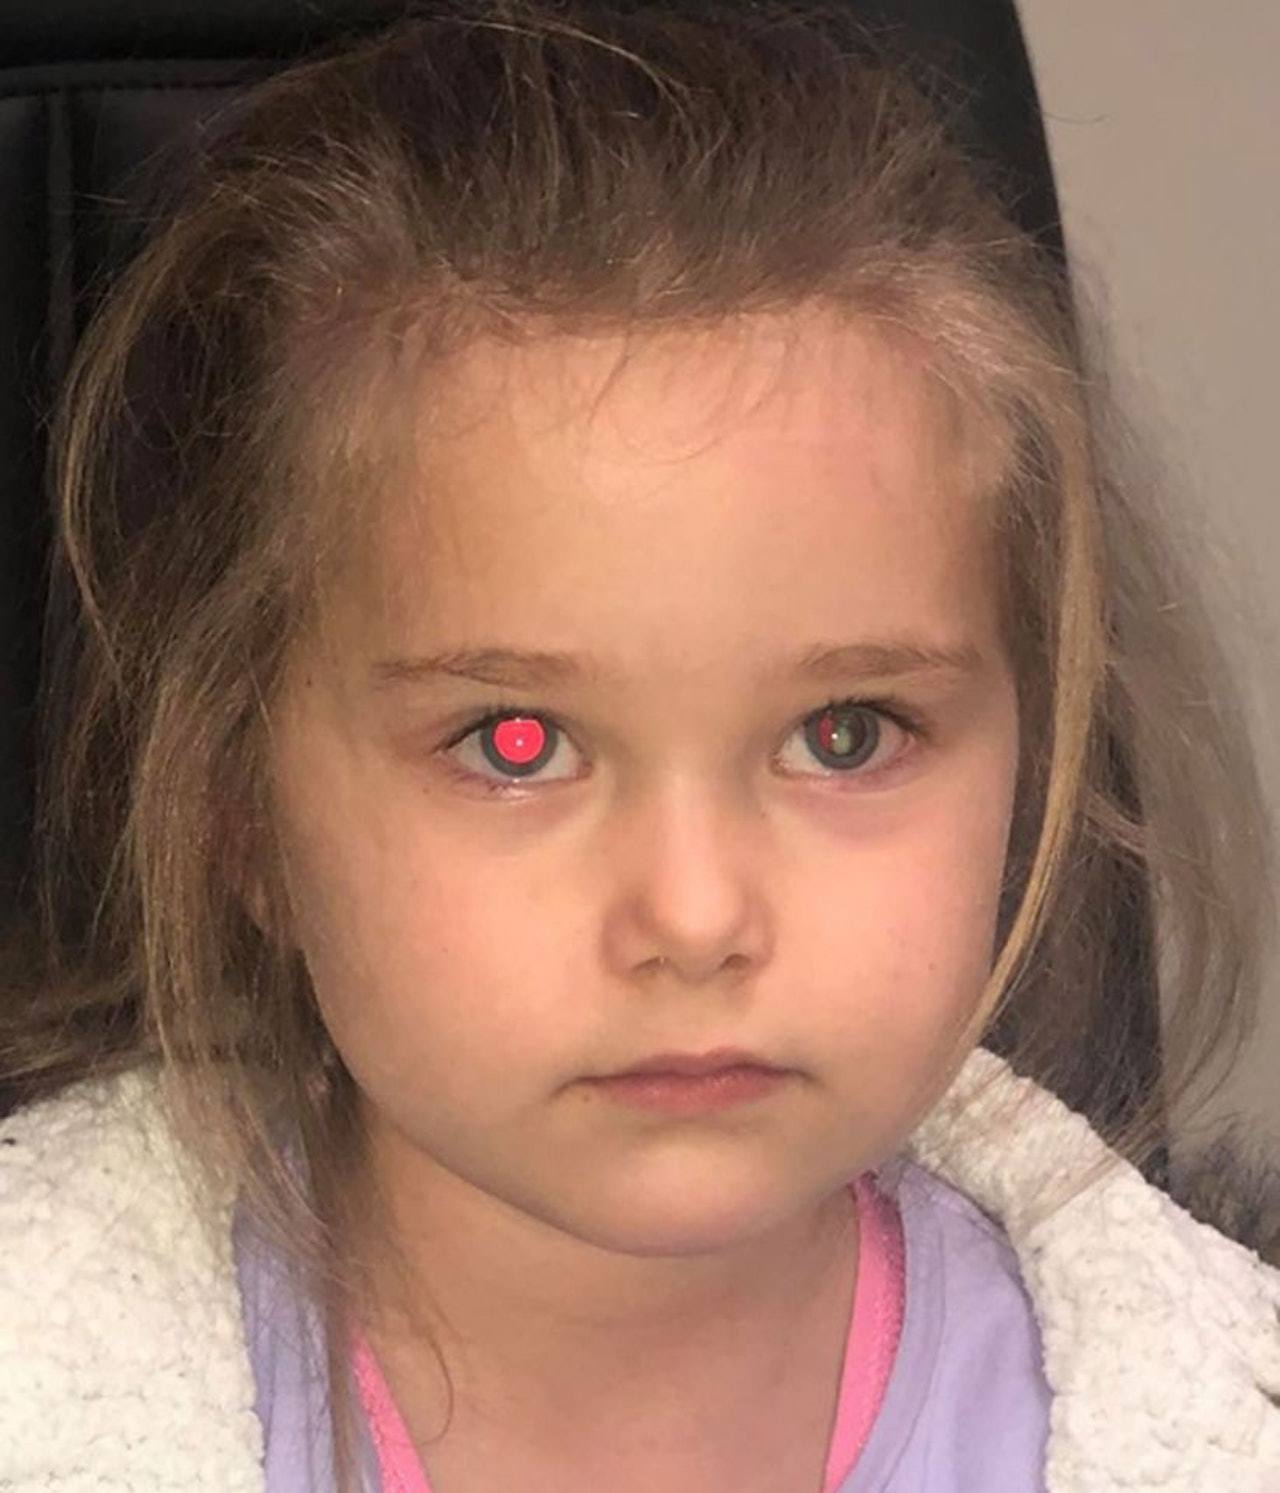 拍照时发现女儿的瞳孔有白色斑点,妈妈带去医院检查吓坏